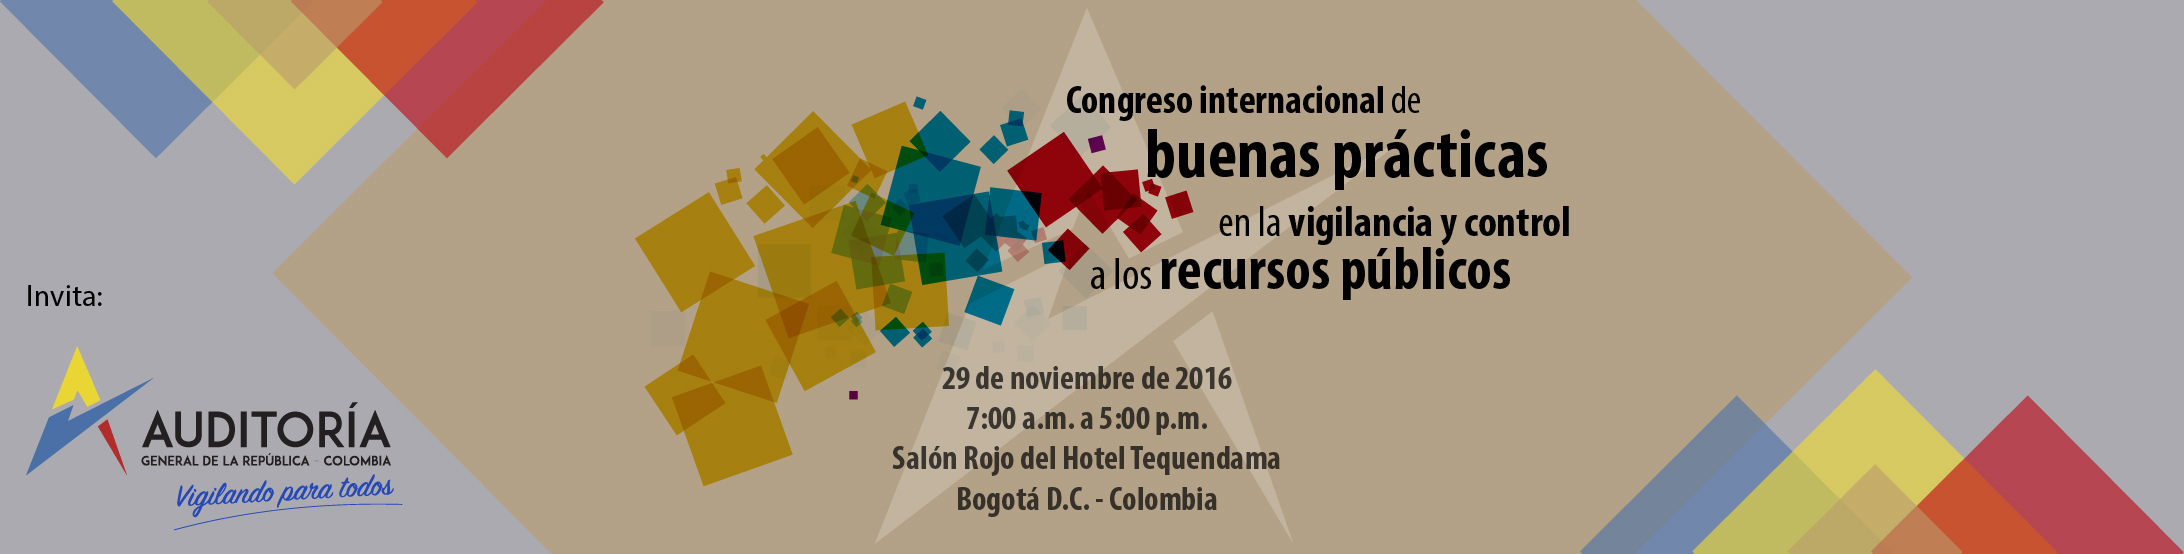  Congreso Internacional Buenas prácticas en la vigilancia y control de los recursos públicos